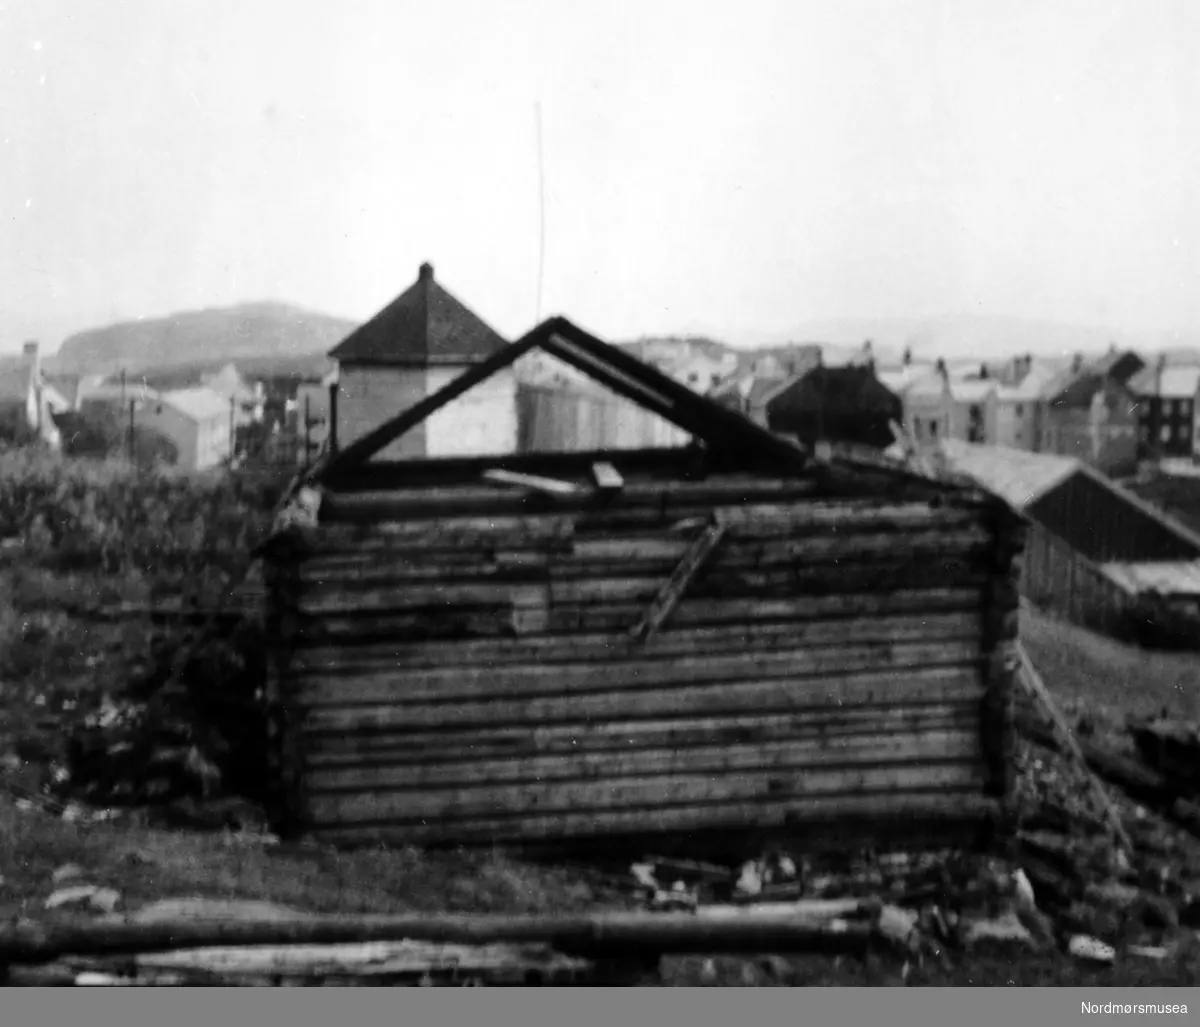 Almskårstua rives i Clausenengen, og taksperrene med nederdelen av stua står igjen. I bakgrunnen ser vi Vardetårnet. Bildet er datert 11. juni 1958. Serie. Nordmøre Museum